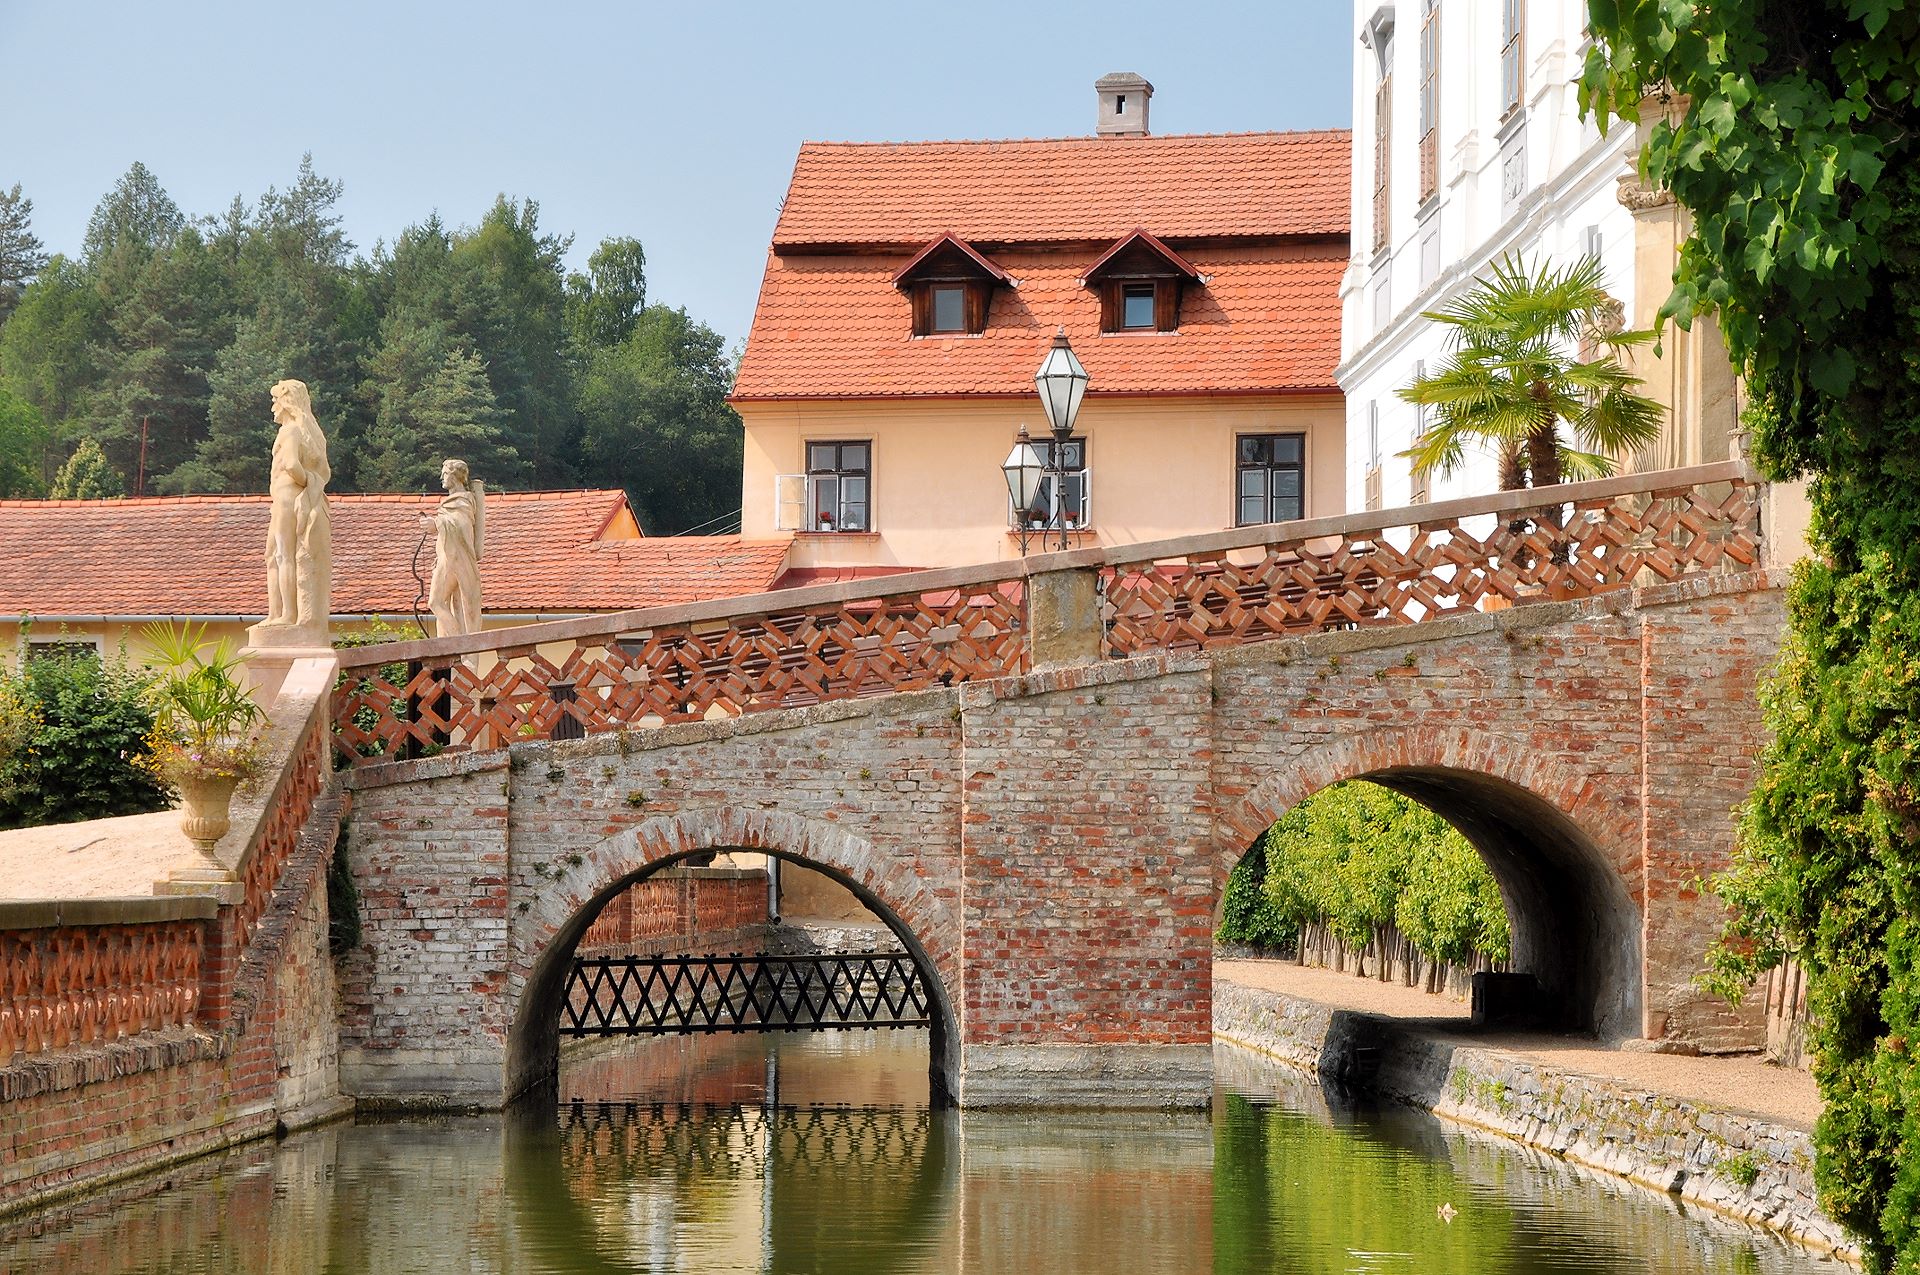 Die Brücke über den Wassergraben als Rest der mittelalterlichen Burg von Lysice